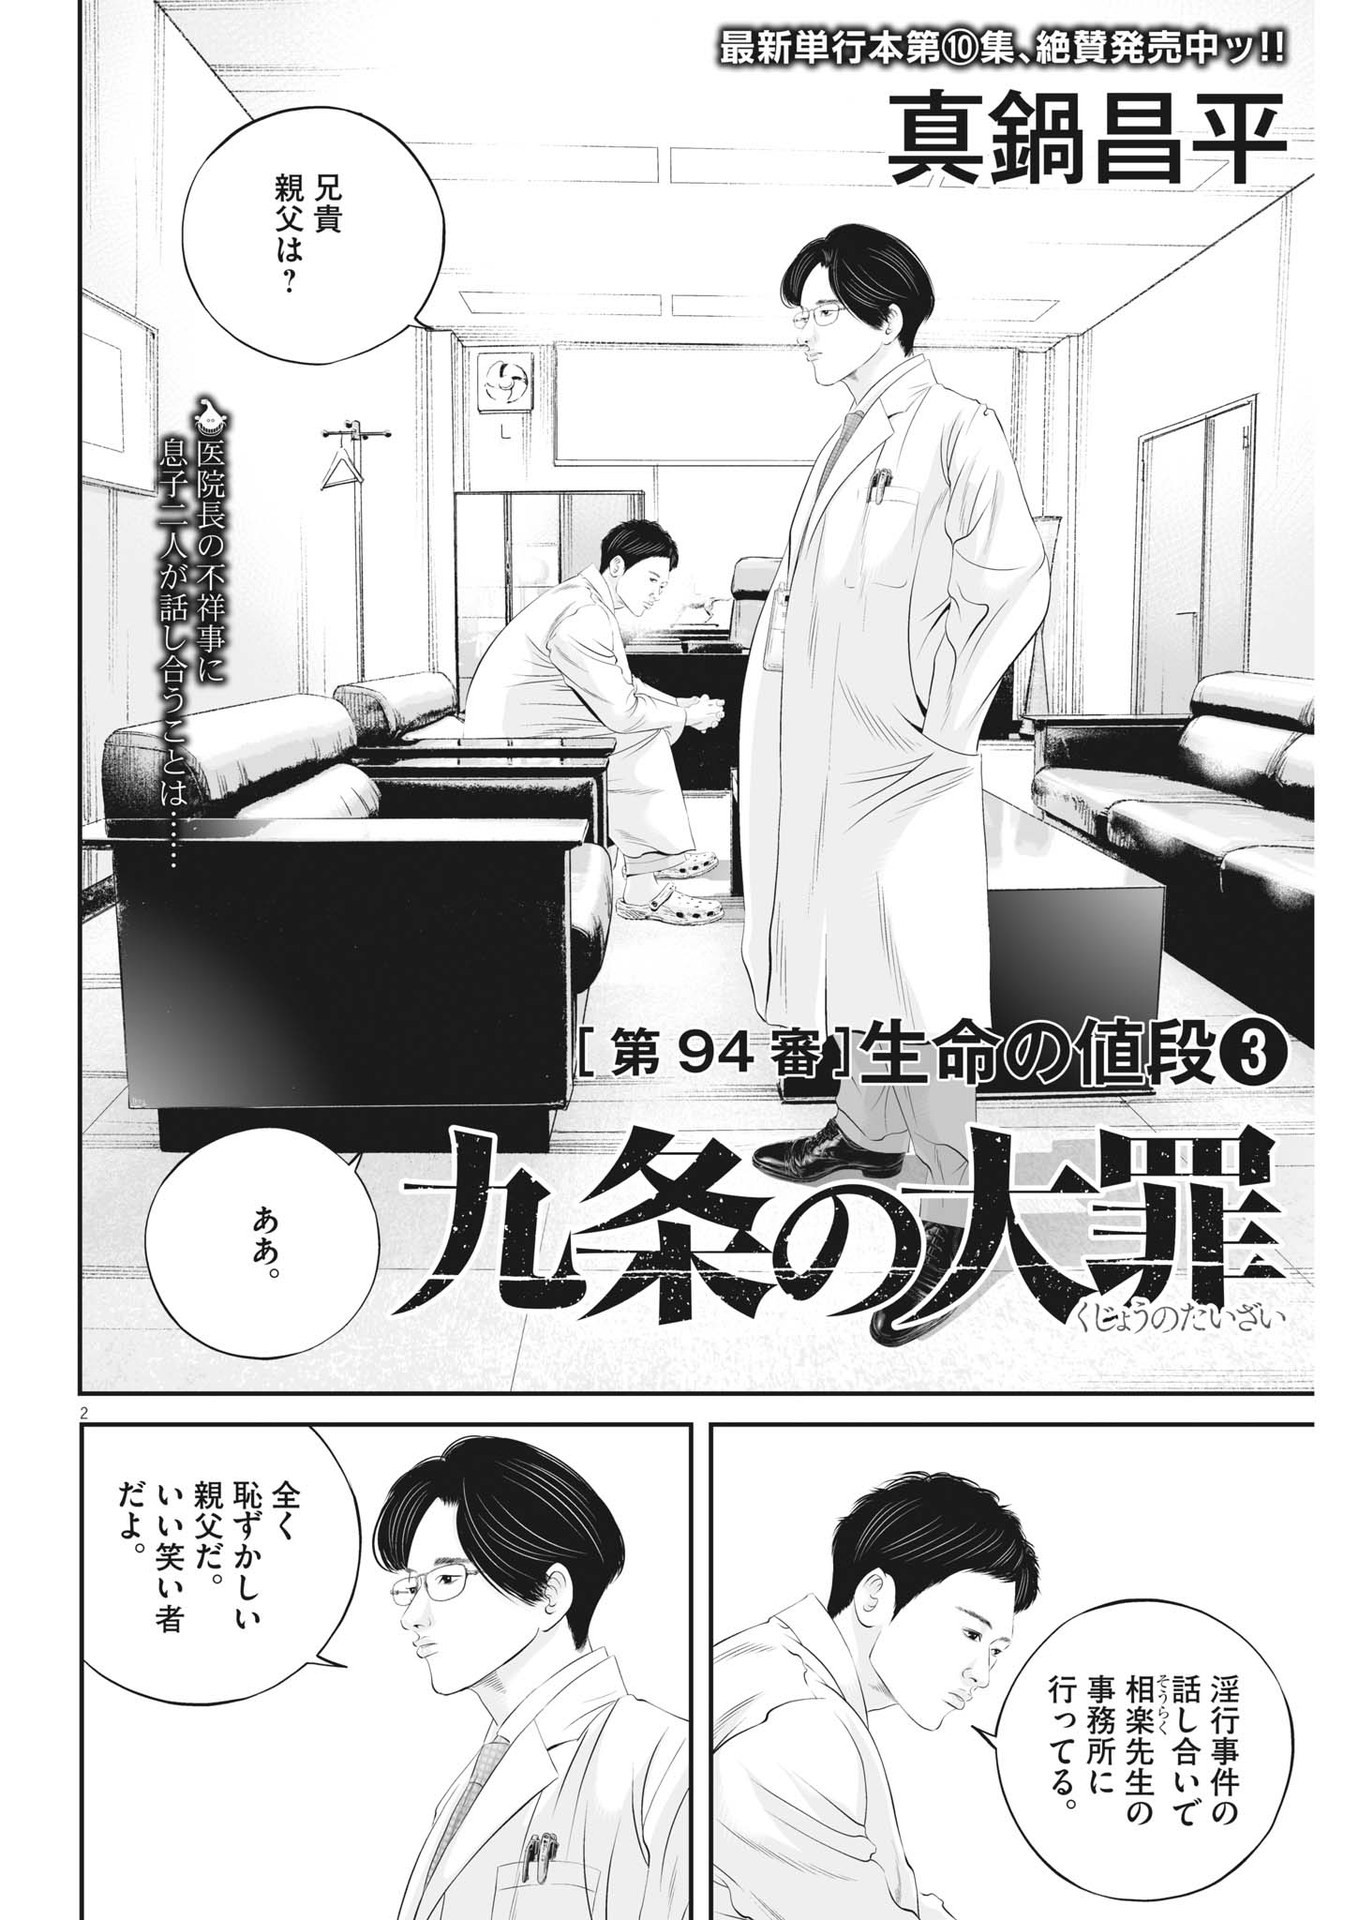 Kujou no Taizai - Chapter 94 - Page 2